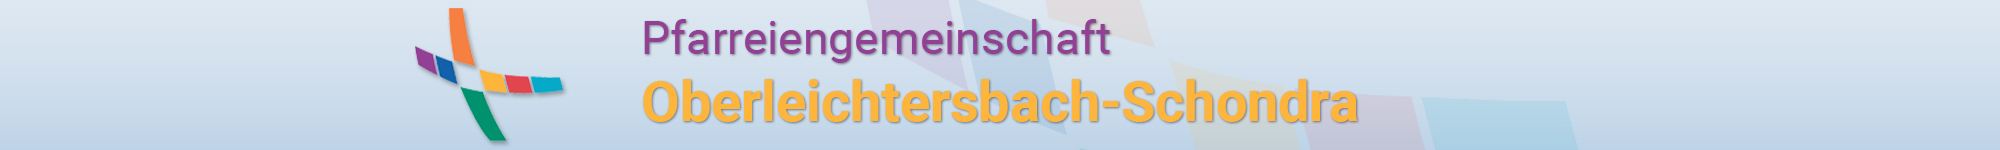 PG Oberleichtersbach-Schondra